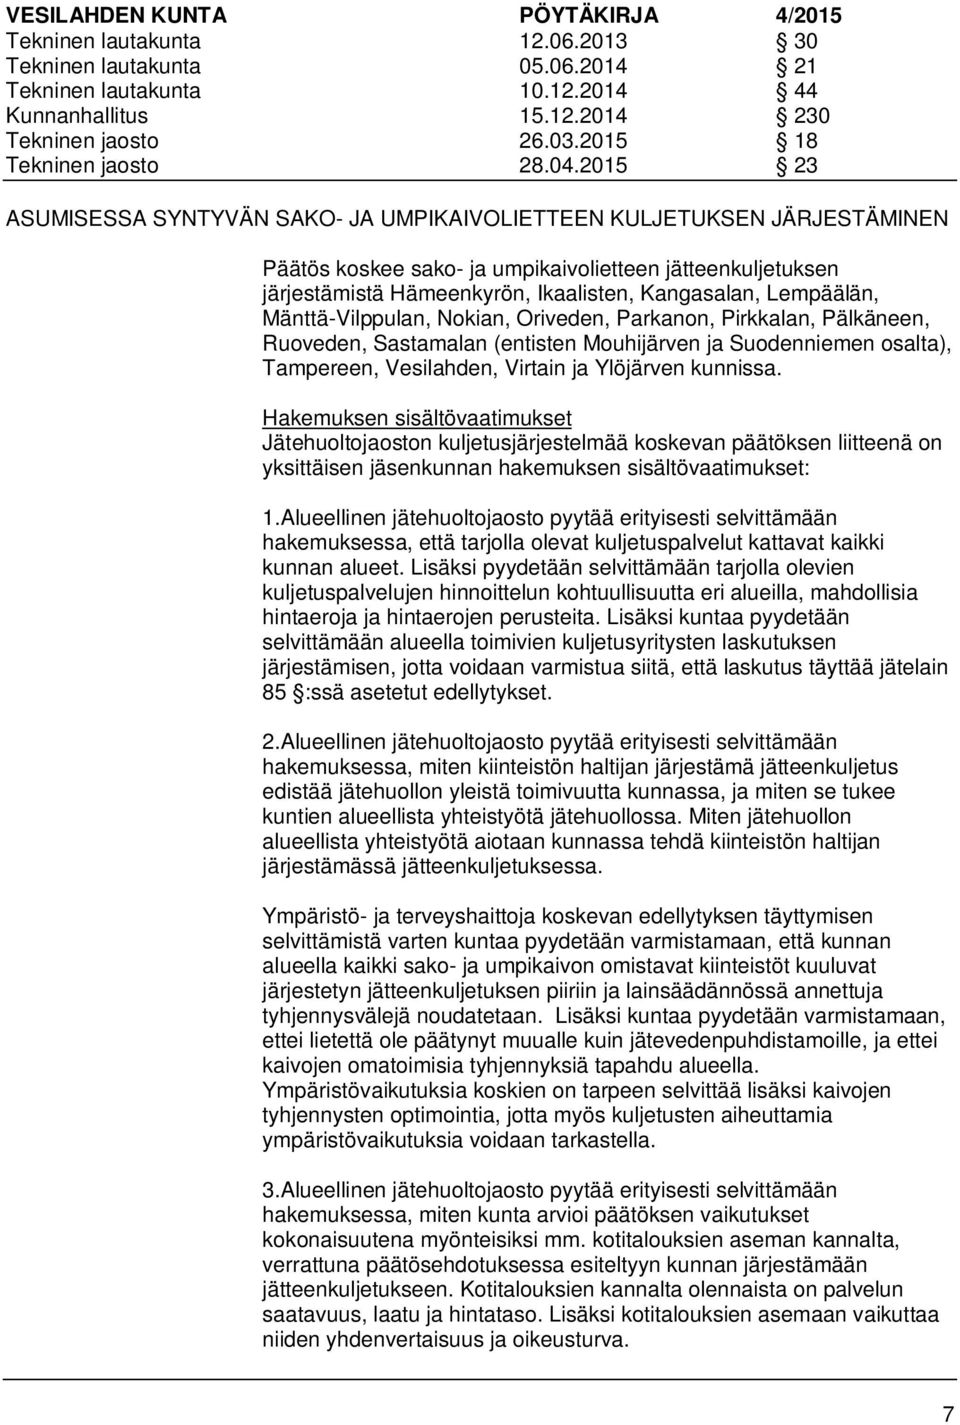 Lempäälän, Mänttä-Vilppulan, Nokian, Oriveden, Parkanon, Pirkkalan, Pälkäneen, Ruoveden, Sastamalan (entisten Mouhijärven ja Suodenniemen osalta), Tampereen, Vesilahden, Virtain ja Ylöjärven kunnissa.